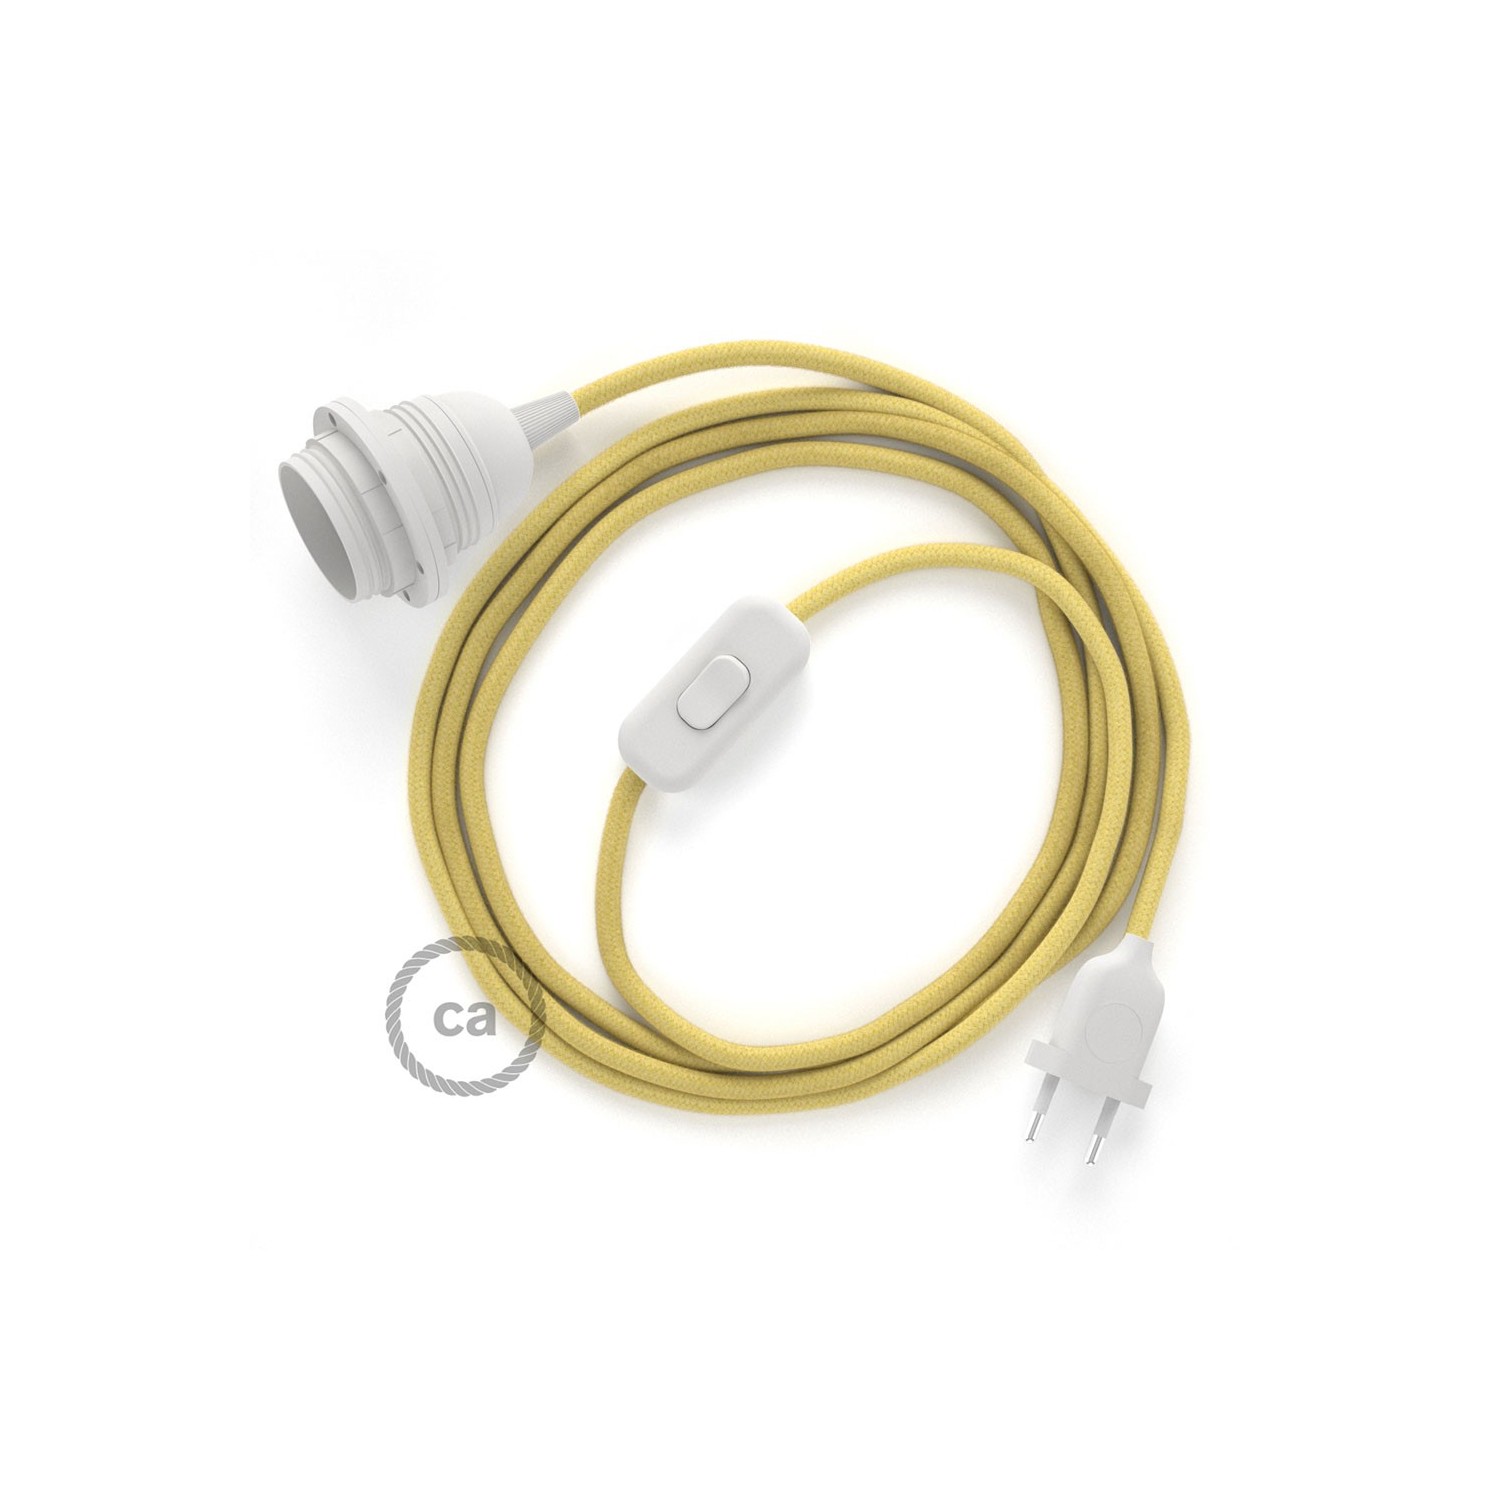 Καλωδίωση SnakeBis με ντουί, διακόπτη και υφασμάτινο καλώδιο - Κίτρινο Παλ Βαμβάκι RC10